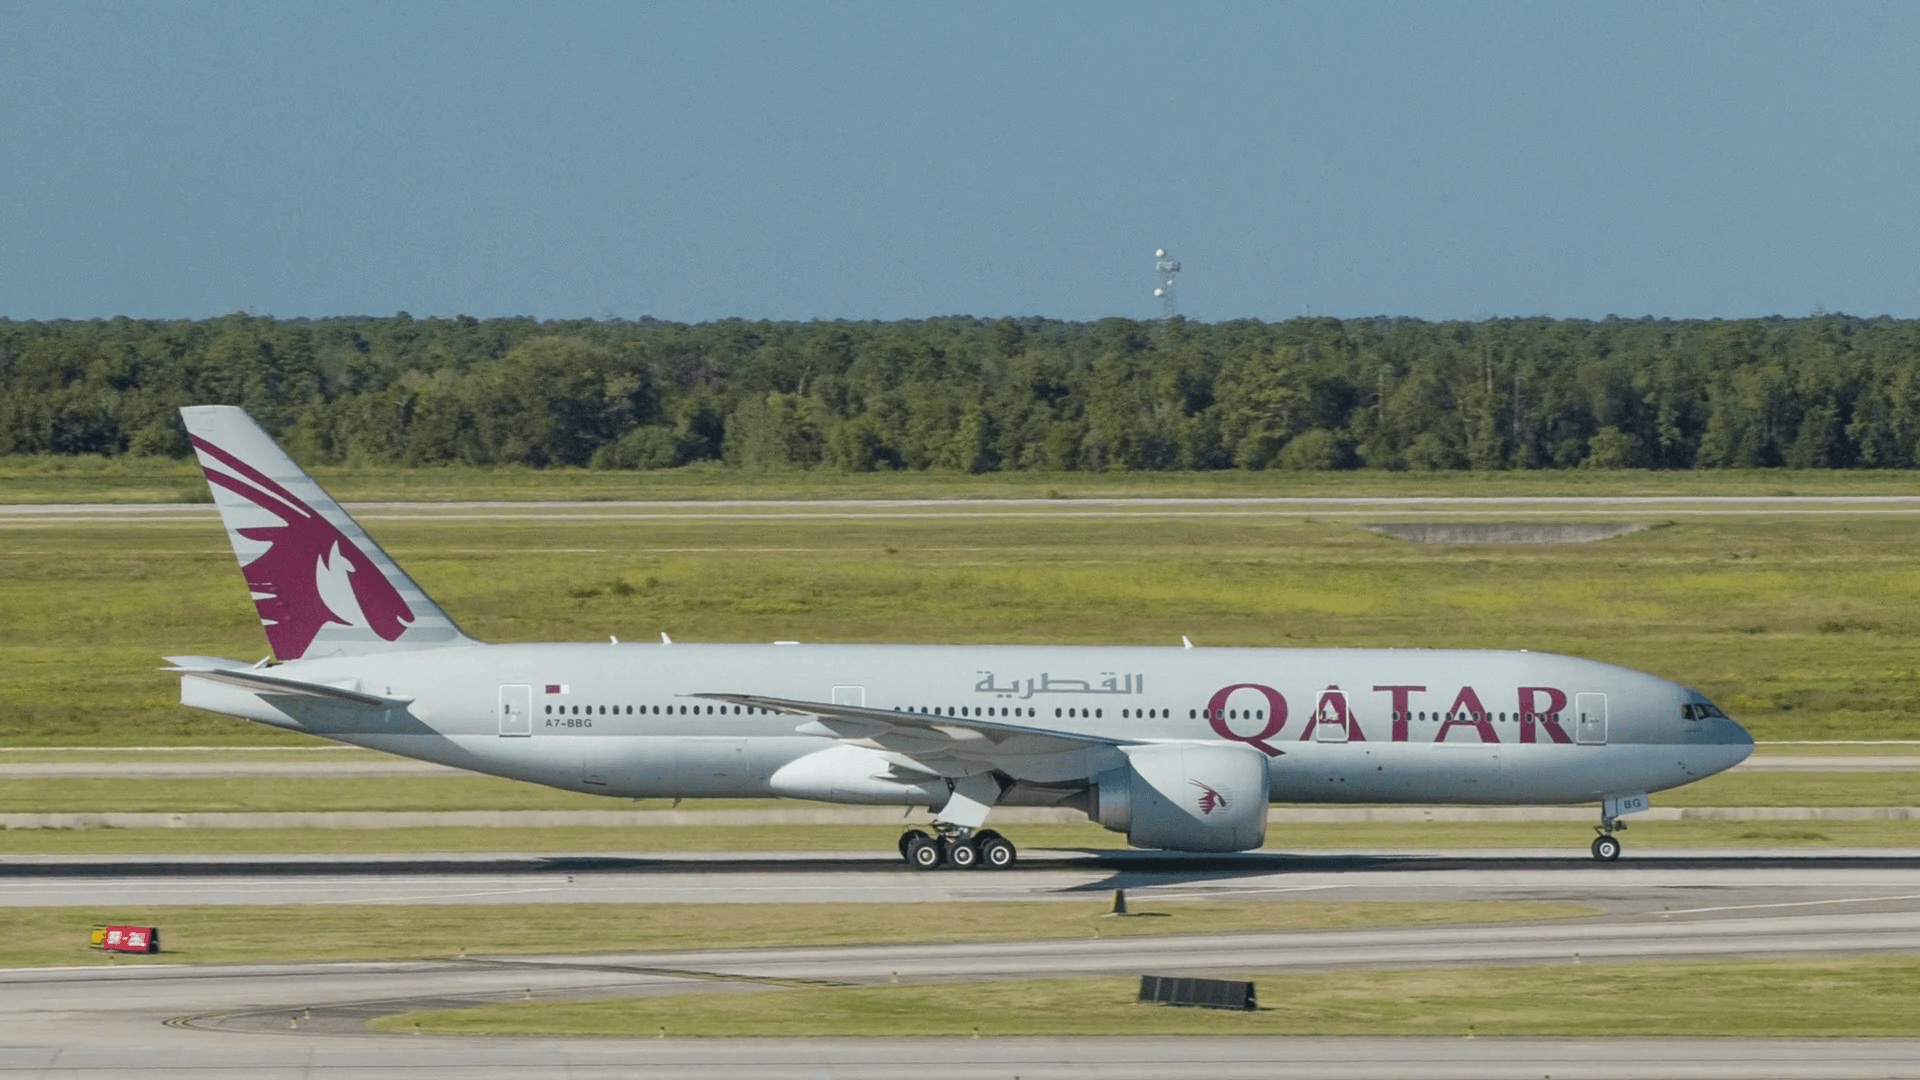 Qatar Airways Boeing 777 200 Commercial Passenger Airliner